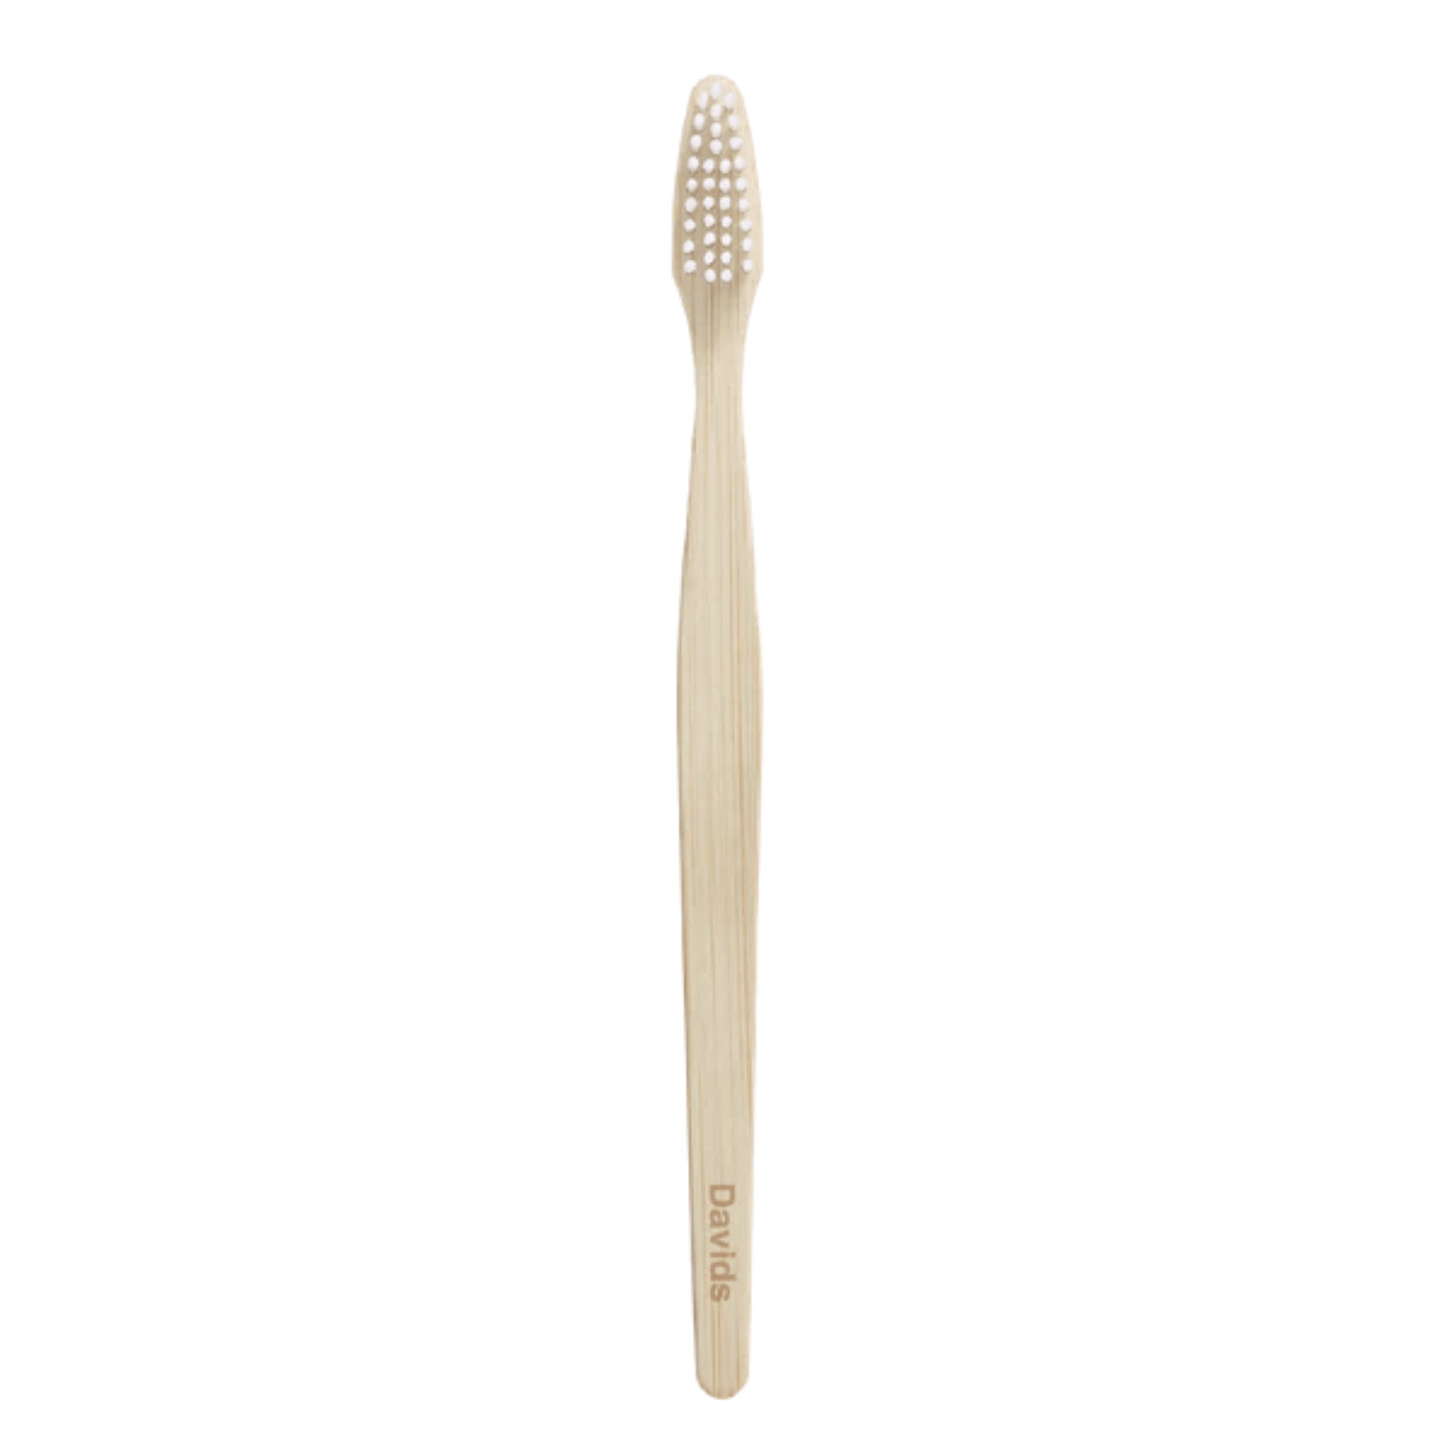 Primary Image of Premium Bamboo Toothbrush